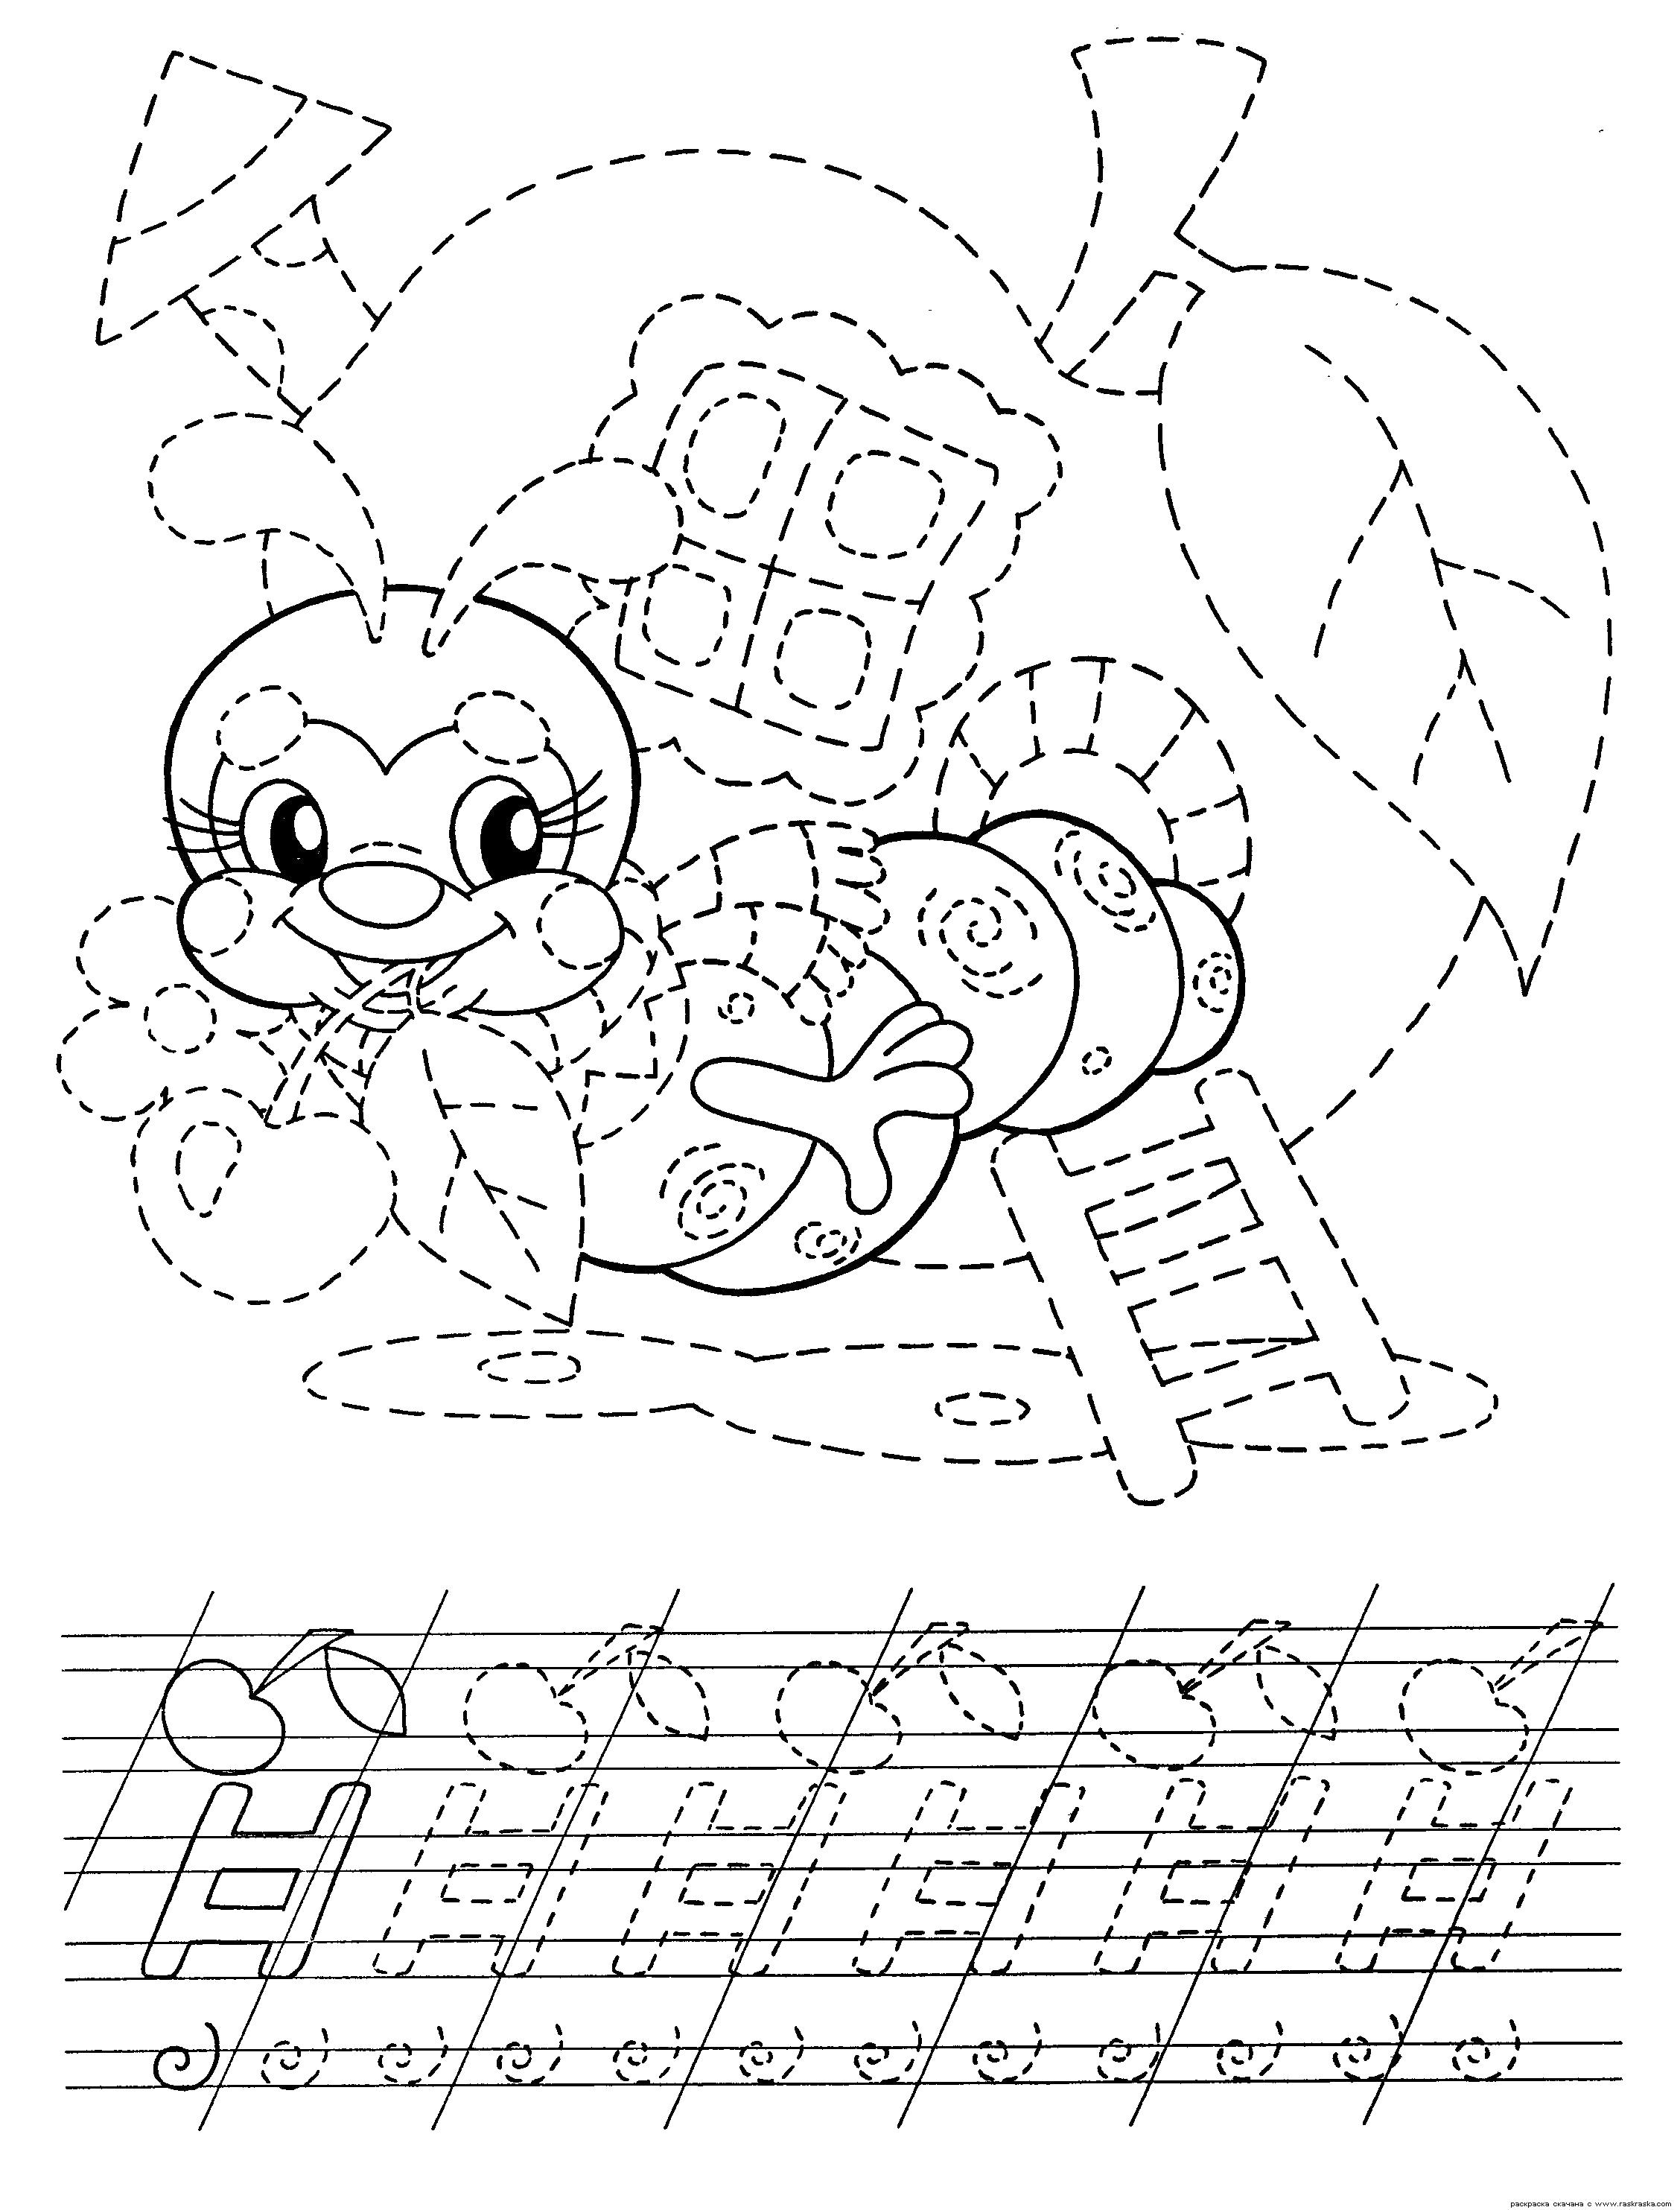 Раскраска Раскраска Гусеница. Раскраска Гусеница в яблоке, раскраска для детей, разукрашка детская, картинки для детей, прописи для подготовки руки к письму, прописи для ребенка, скачать прописи. Гусеница